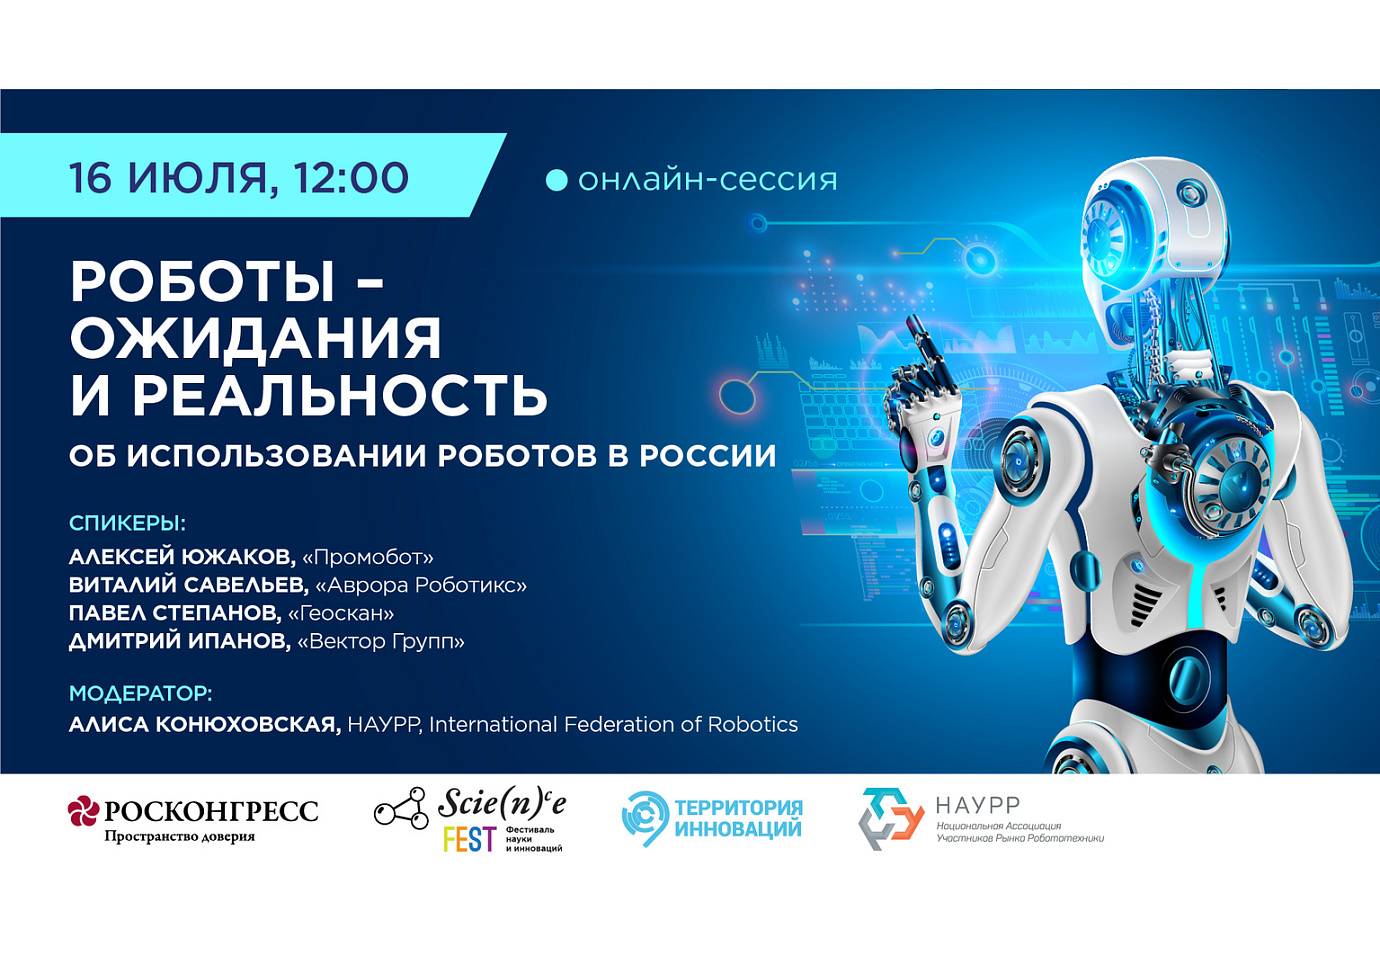 Роботы и развитие робототехники в России – главные темы онлайн-сессии Фонда Росконгресс в рамках Фестиваля Science Fest